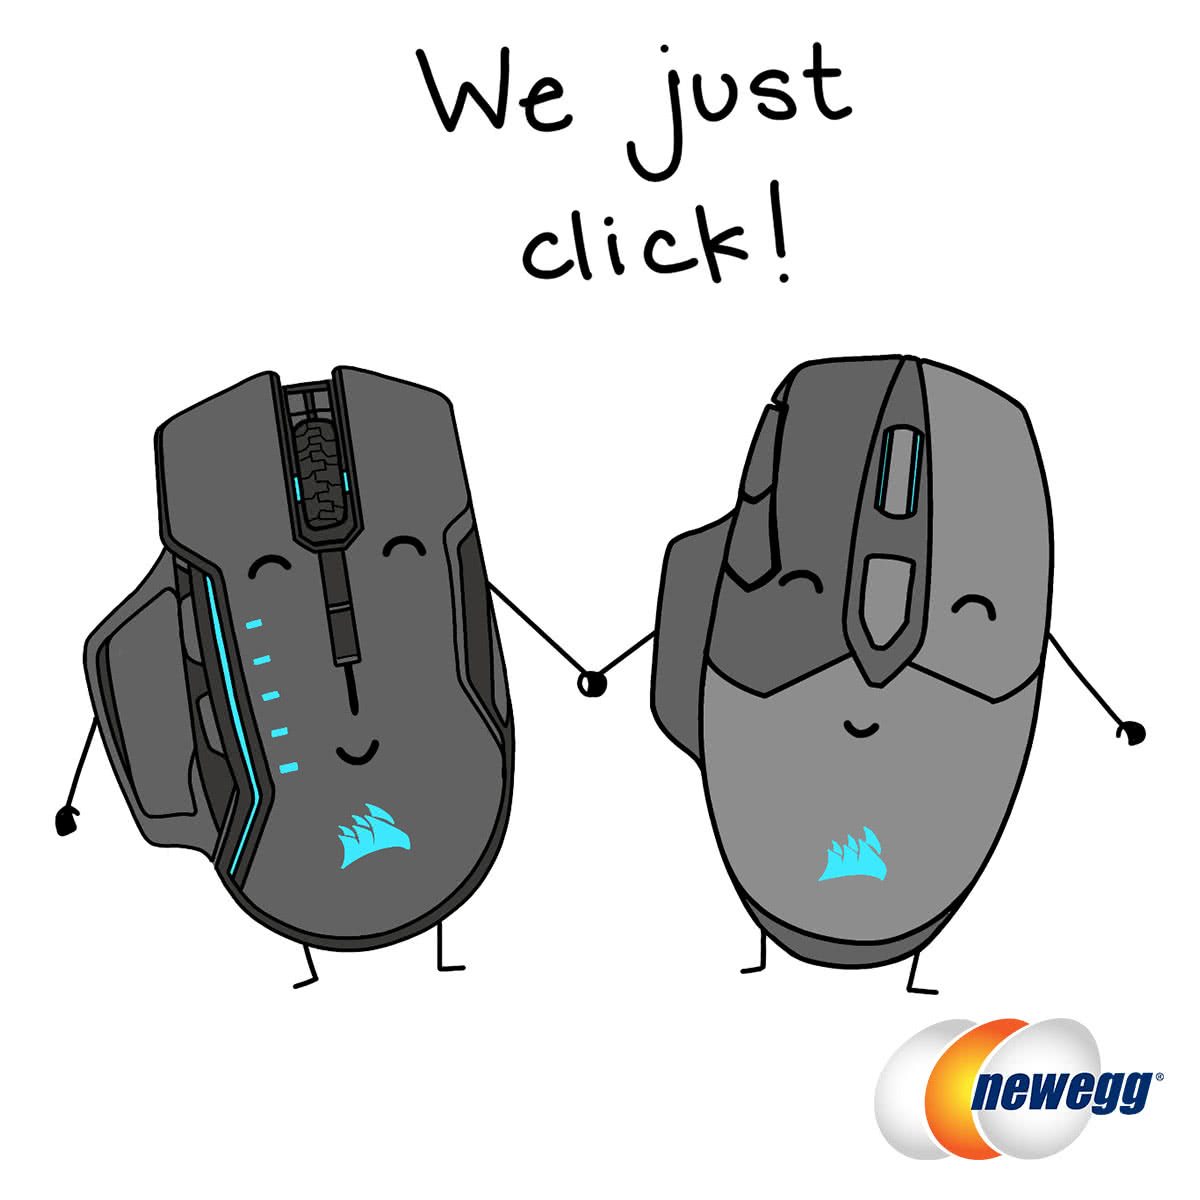 We just click!